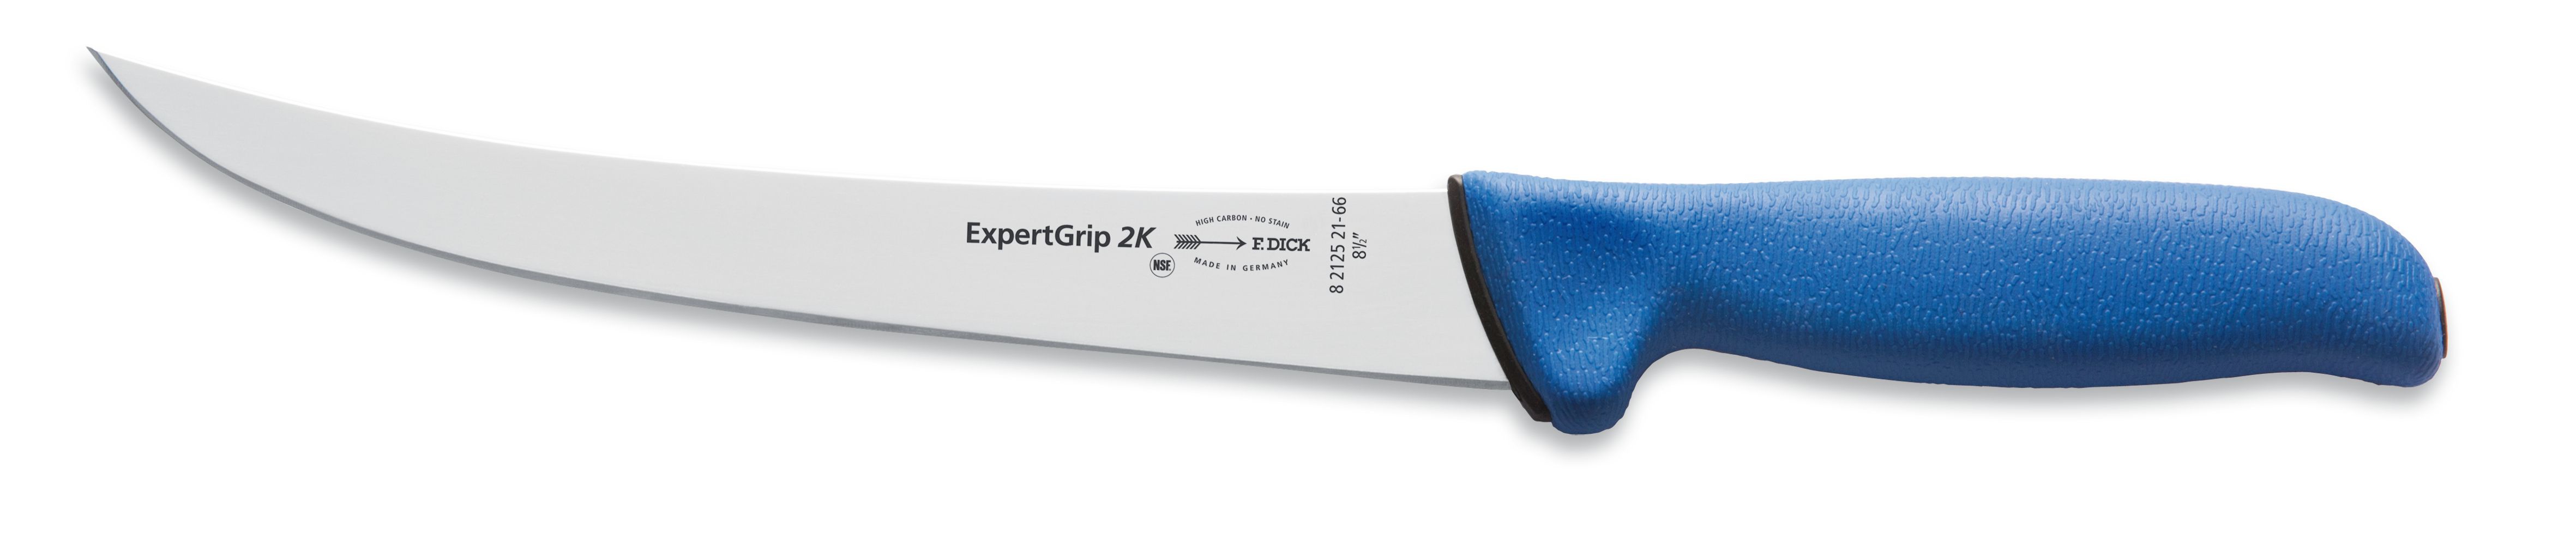 Blokový nůž v délce 21 cm ze série ExpertGrip modrý